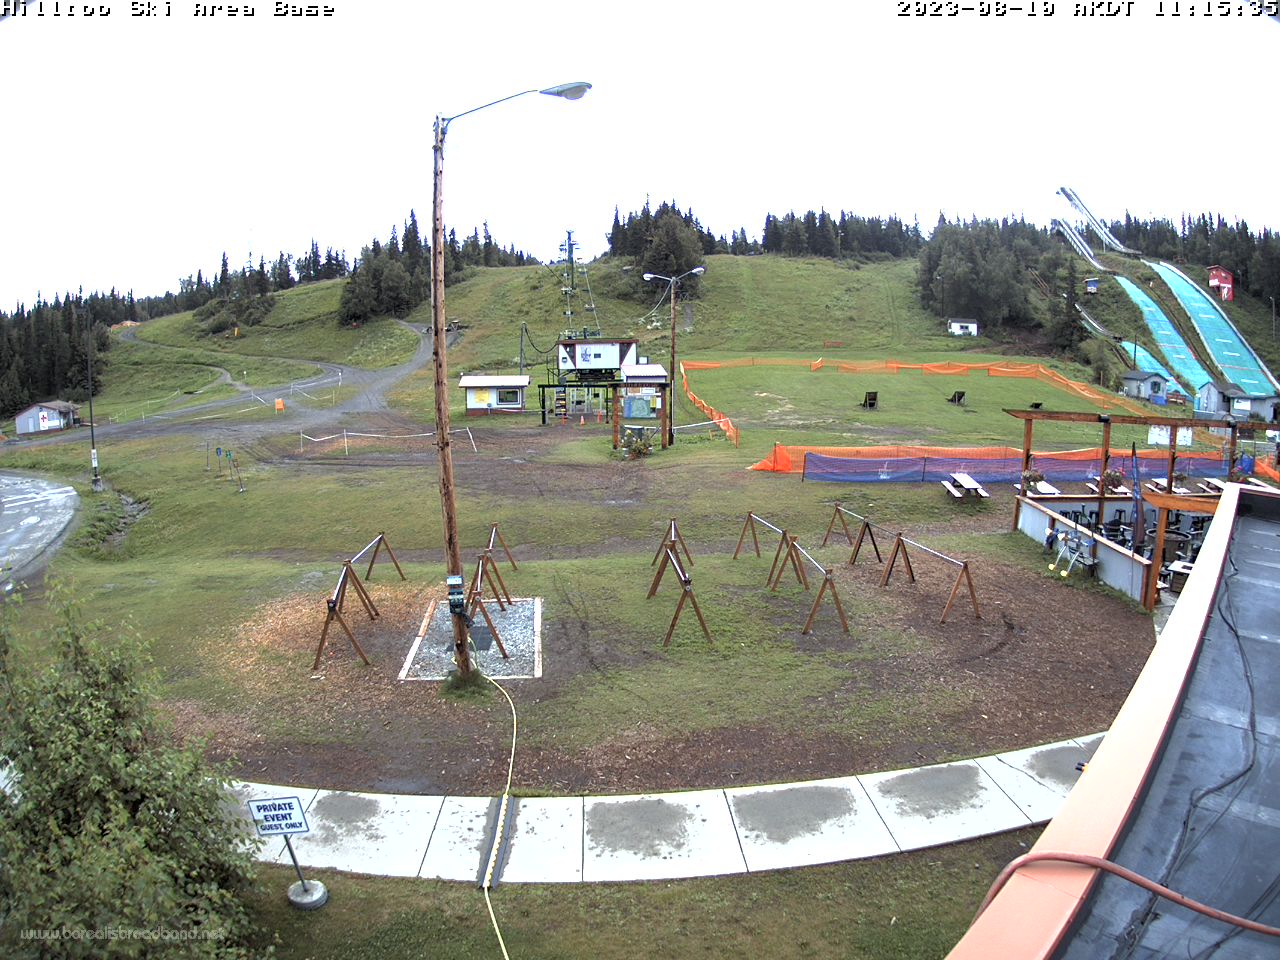 Camera image of Alaska's Hilltop Ski & Biking Area.